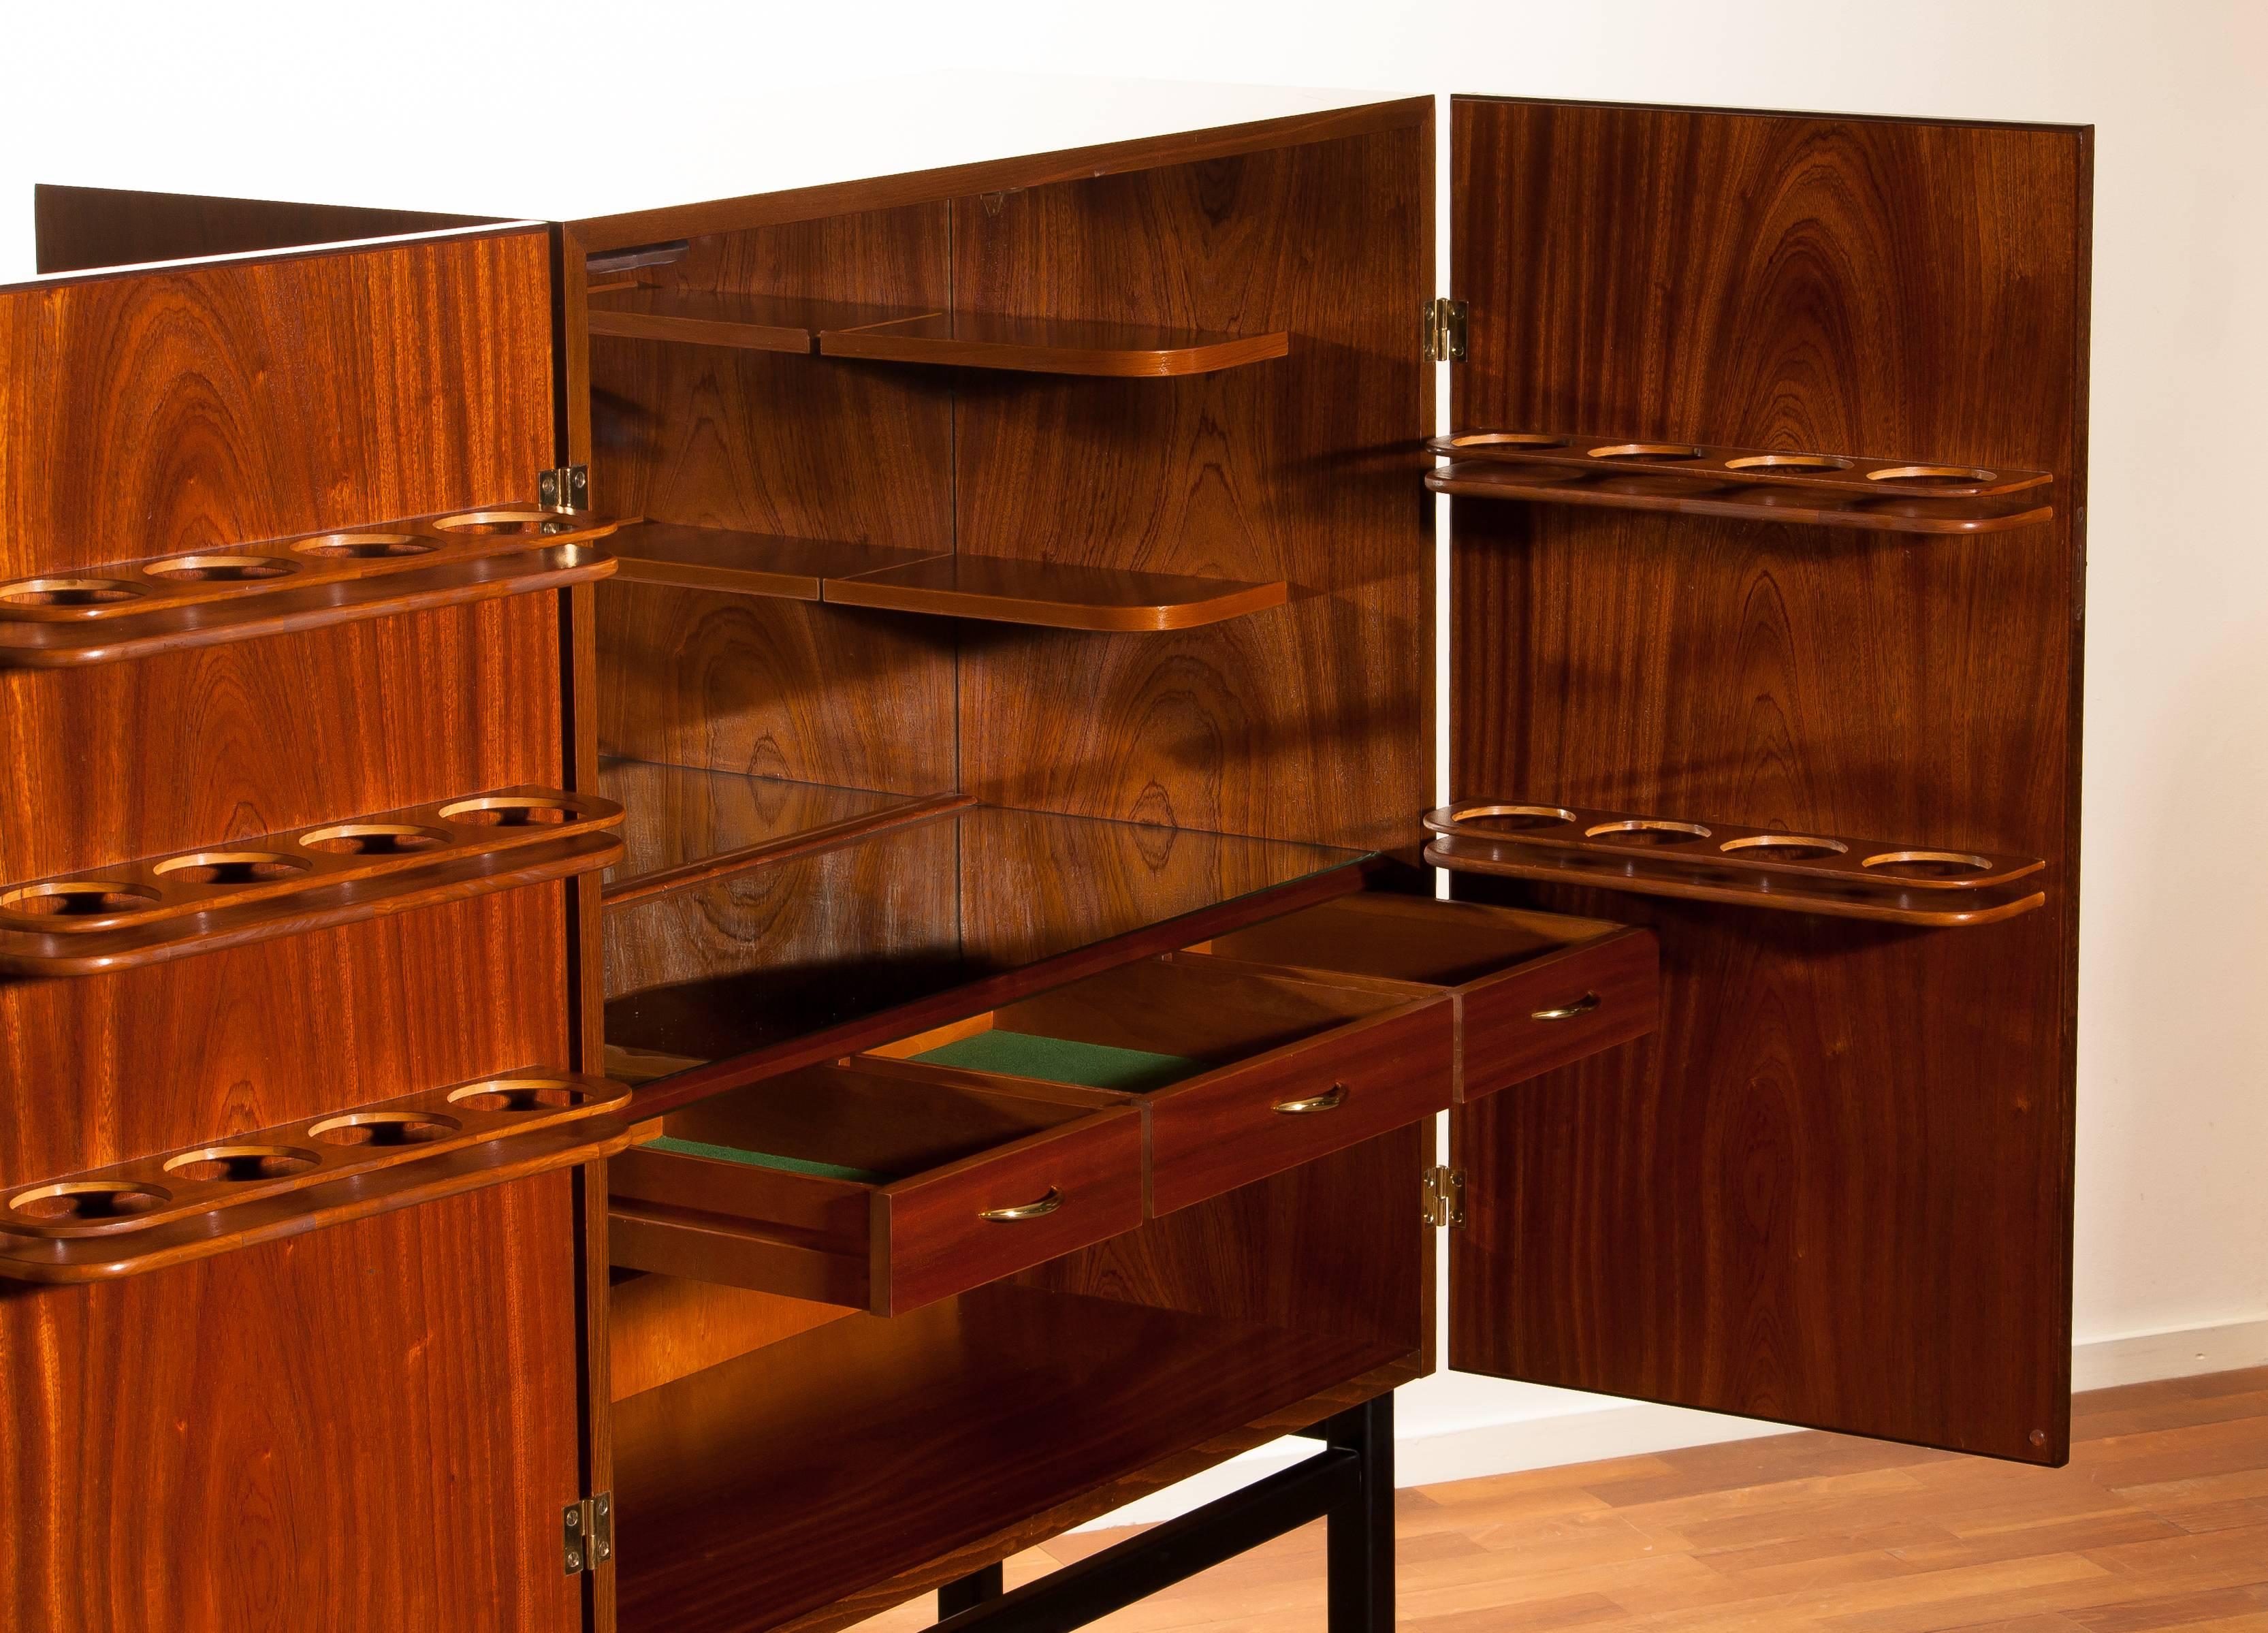 Mahogany Dry Bar Cabinet, Brass Details, High Black Skinny Legs Made by Förenade 3